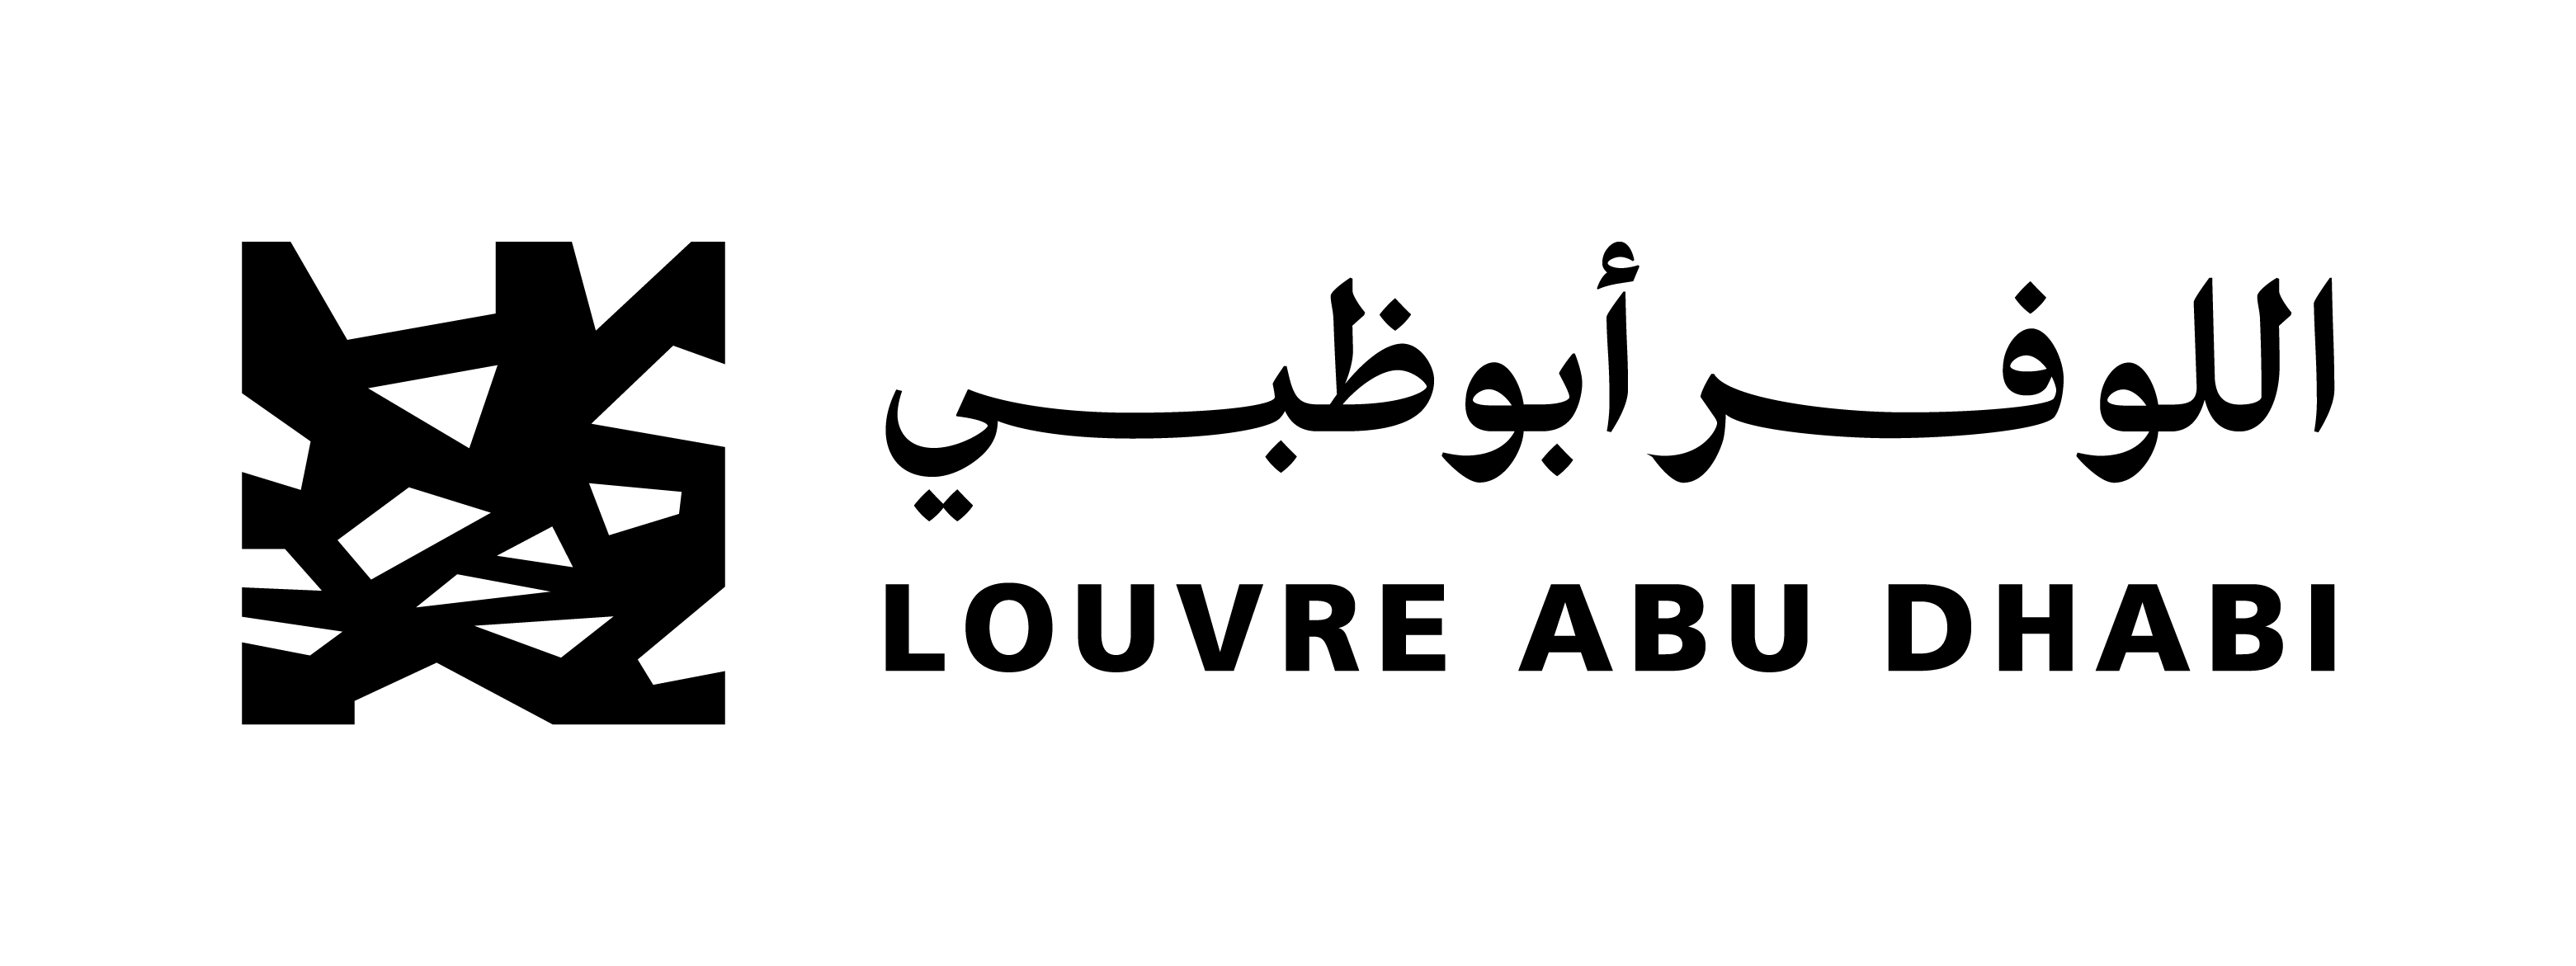 LouvreAbuDhabi